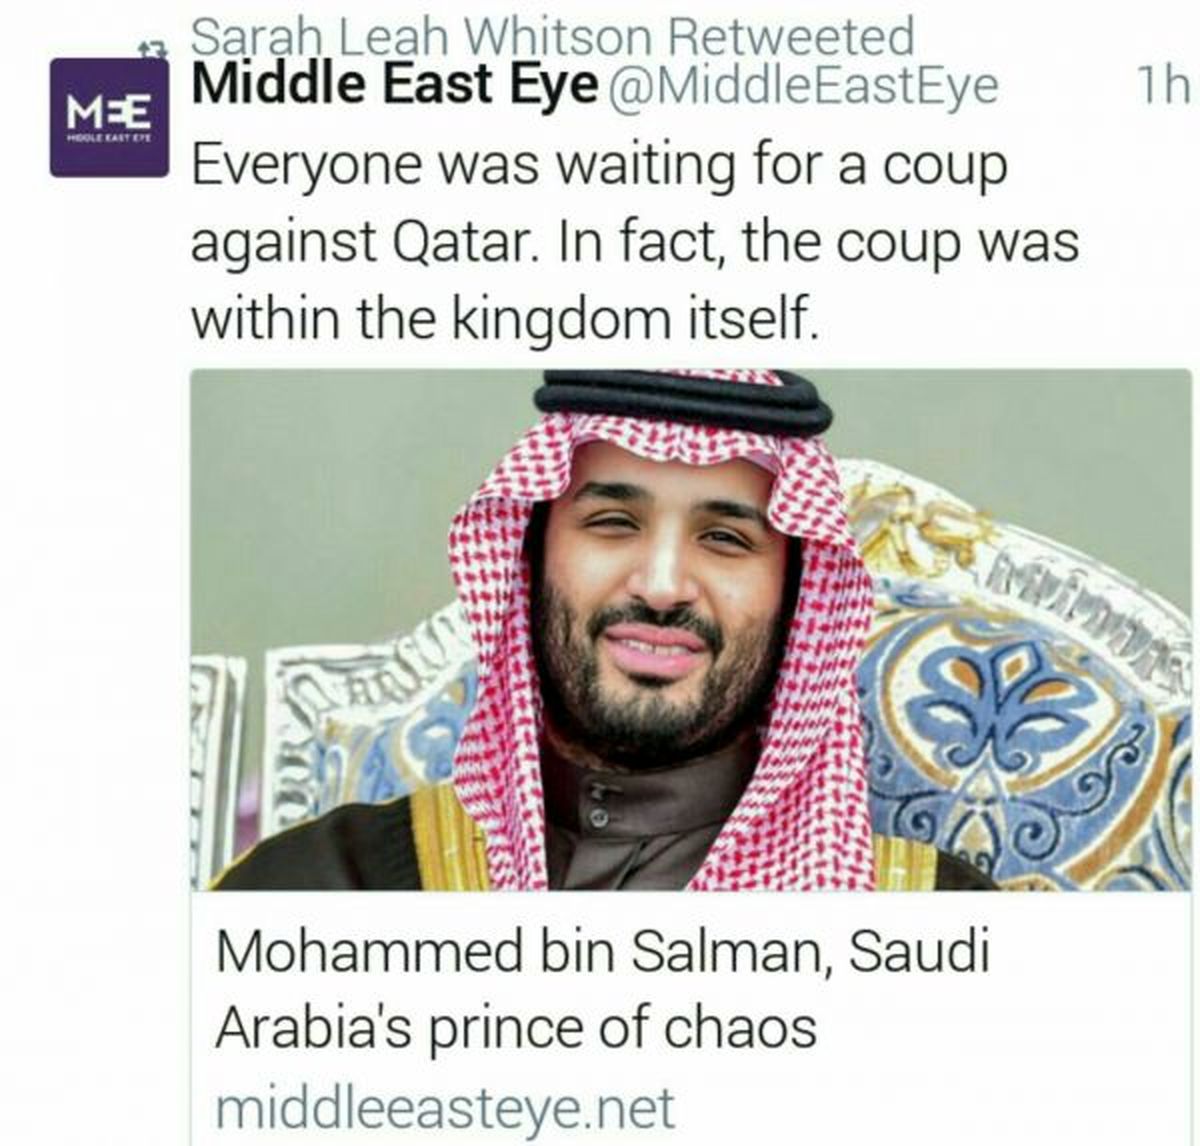 توئیت جالب یک رسانه درباره ولیعهدی بن سلمان